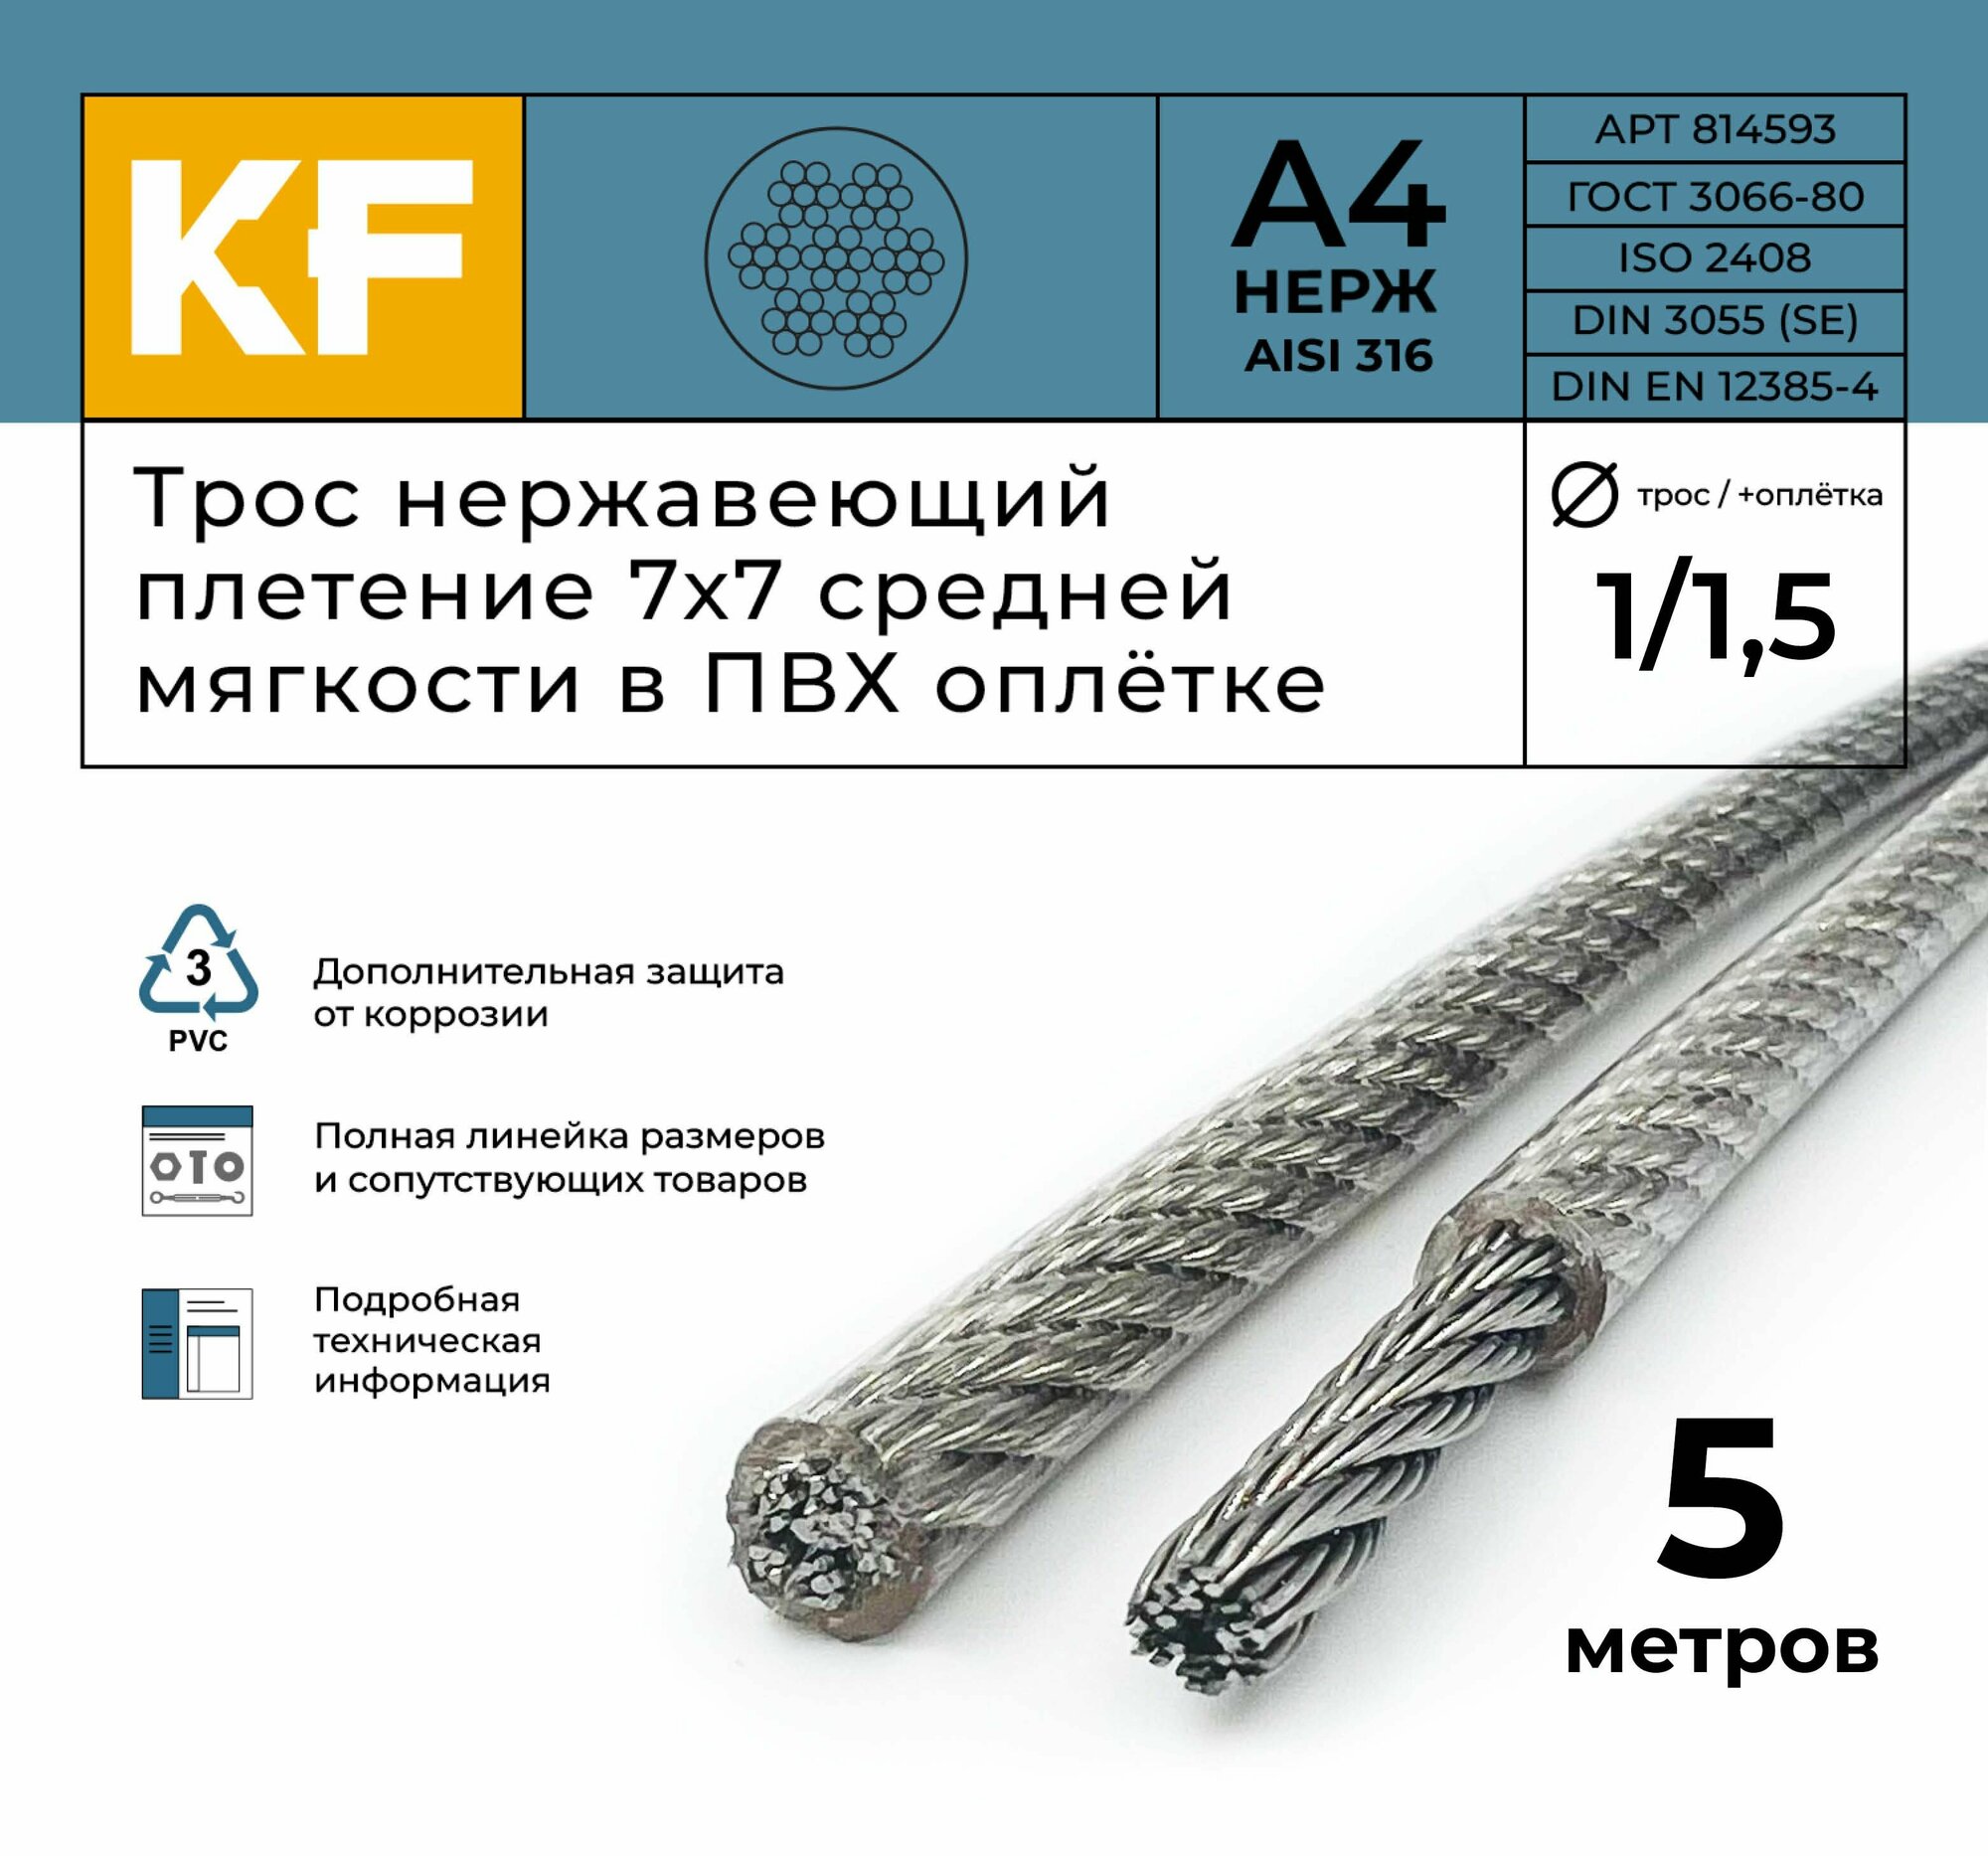 Трос нержавеющий 1,0/1,5 мм сталь А4 плетение 7х7 средней мягкости в ПВХ оплетке 5 метров